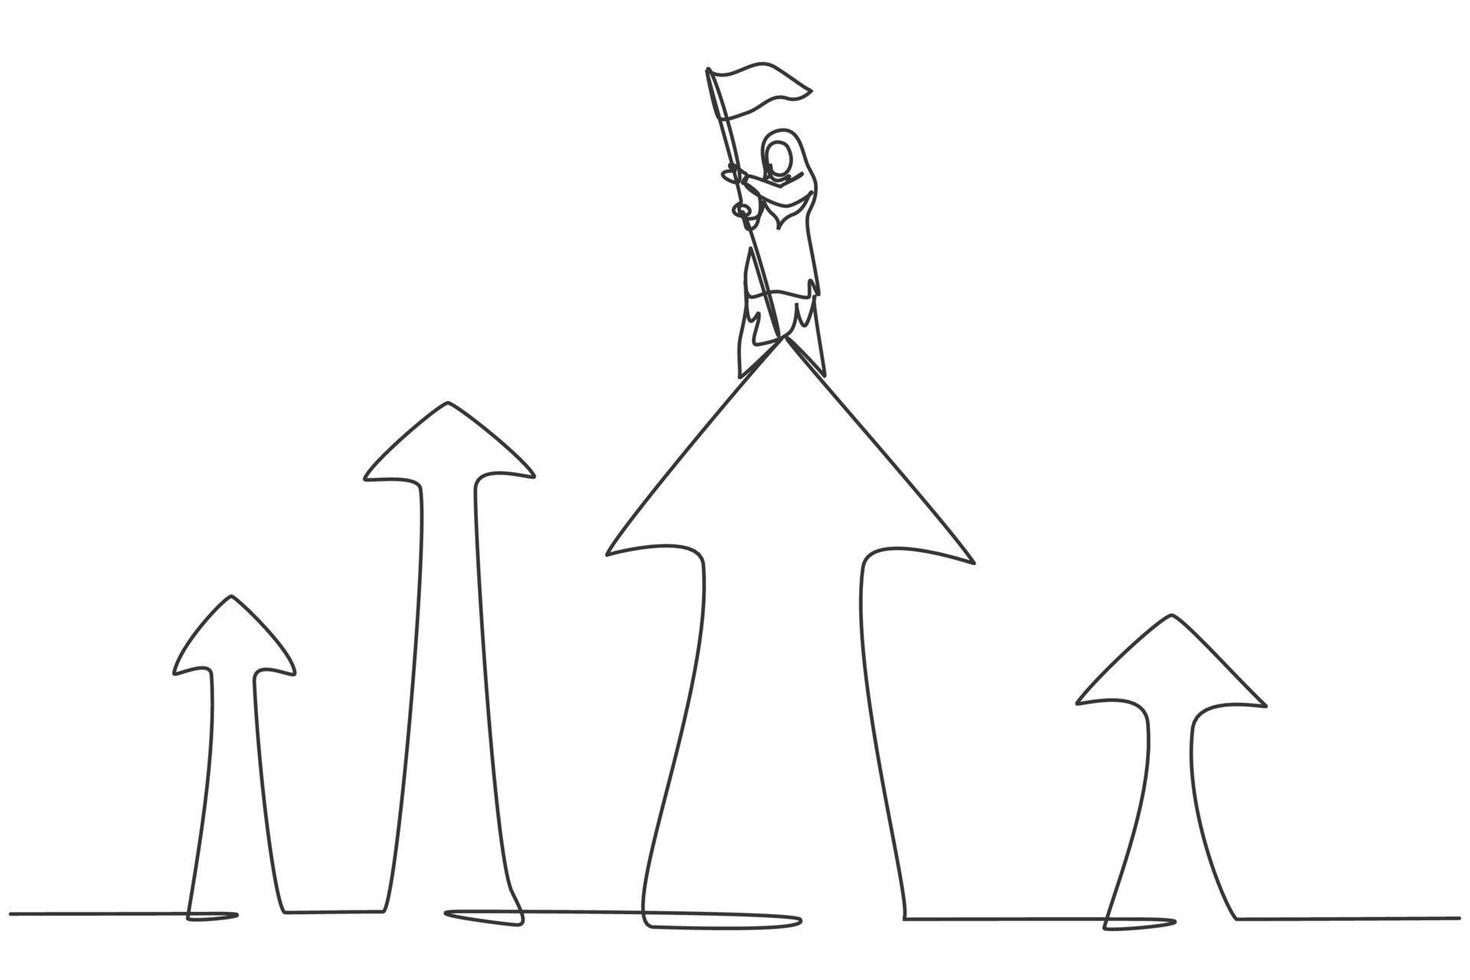 singolo disegno a tratteggio giovane donna d'affari araba piantato bandiera sulla parte superiore del simbolo della freccia. concetto minimo di crescita finanziaria aziendale. illustrazione vettoriale grafica di disegno di disegno di linea continua moderna